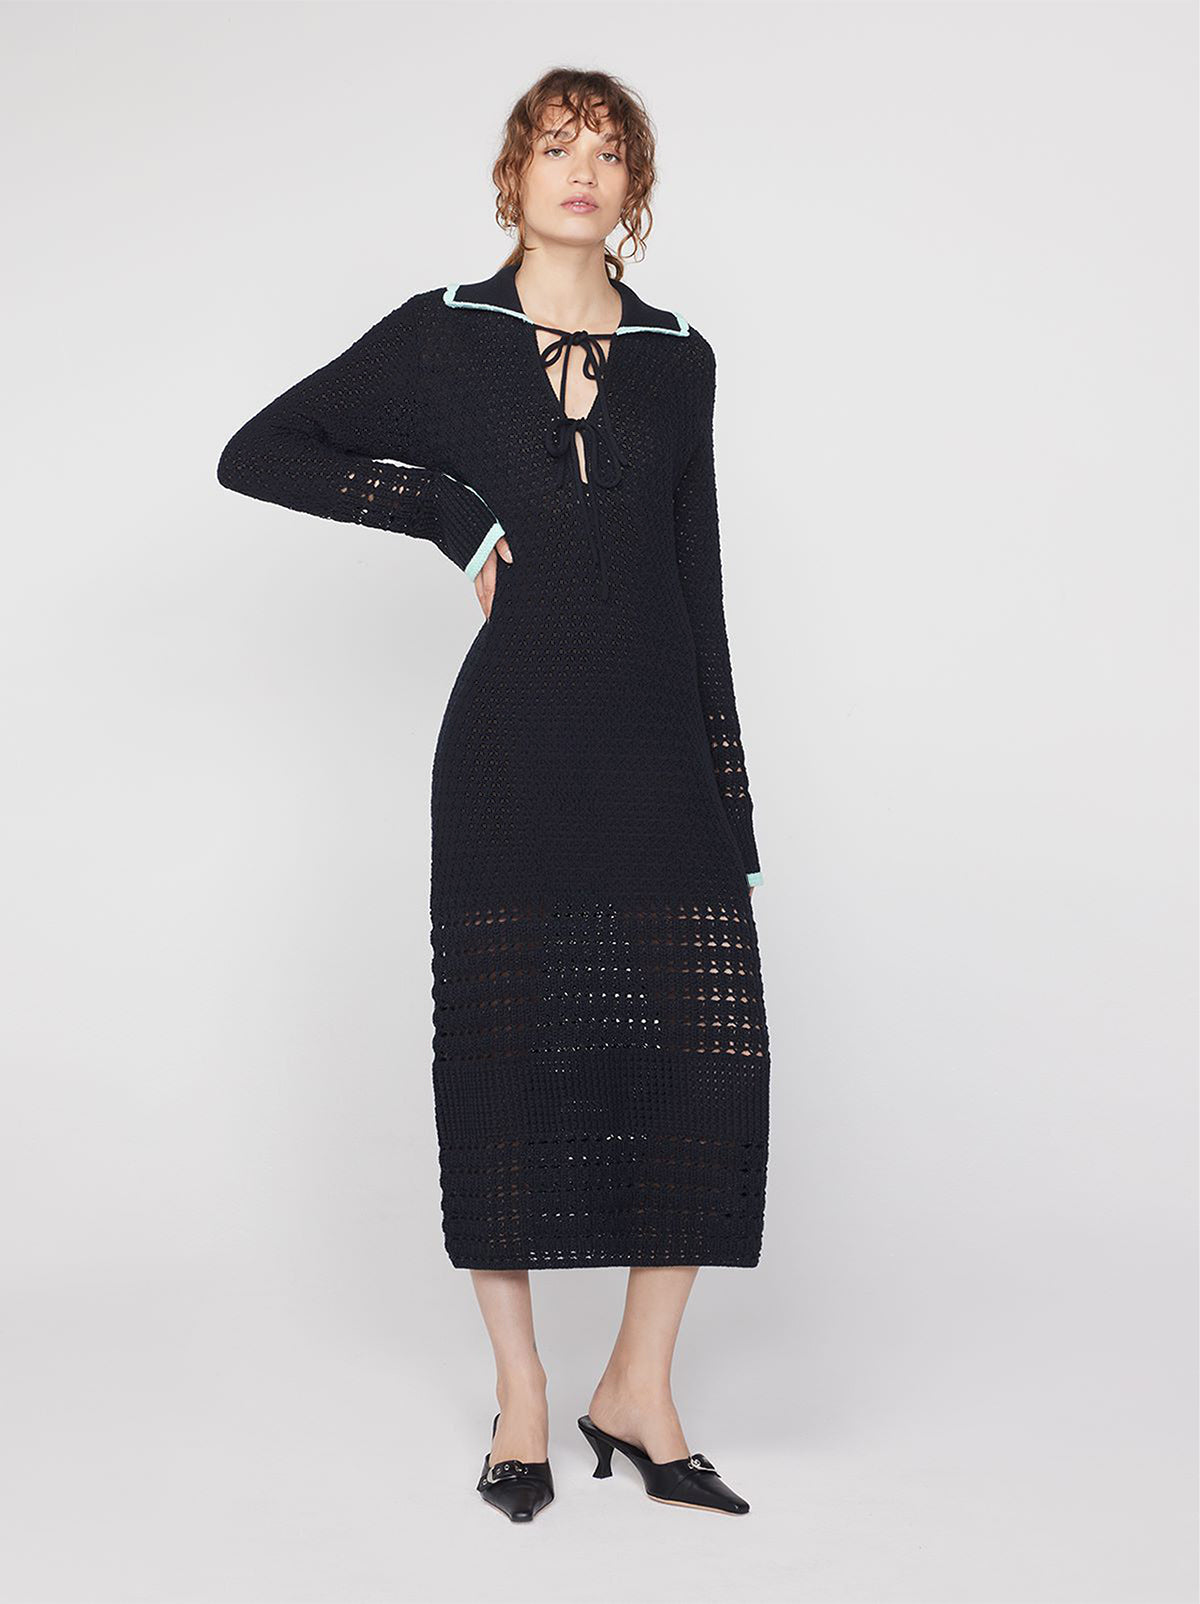 Delilah Black Crochet Knit Dress By KITRI Studio